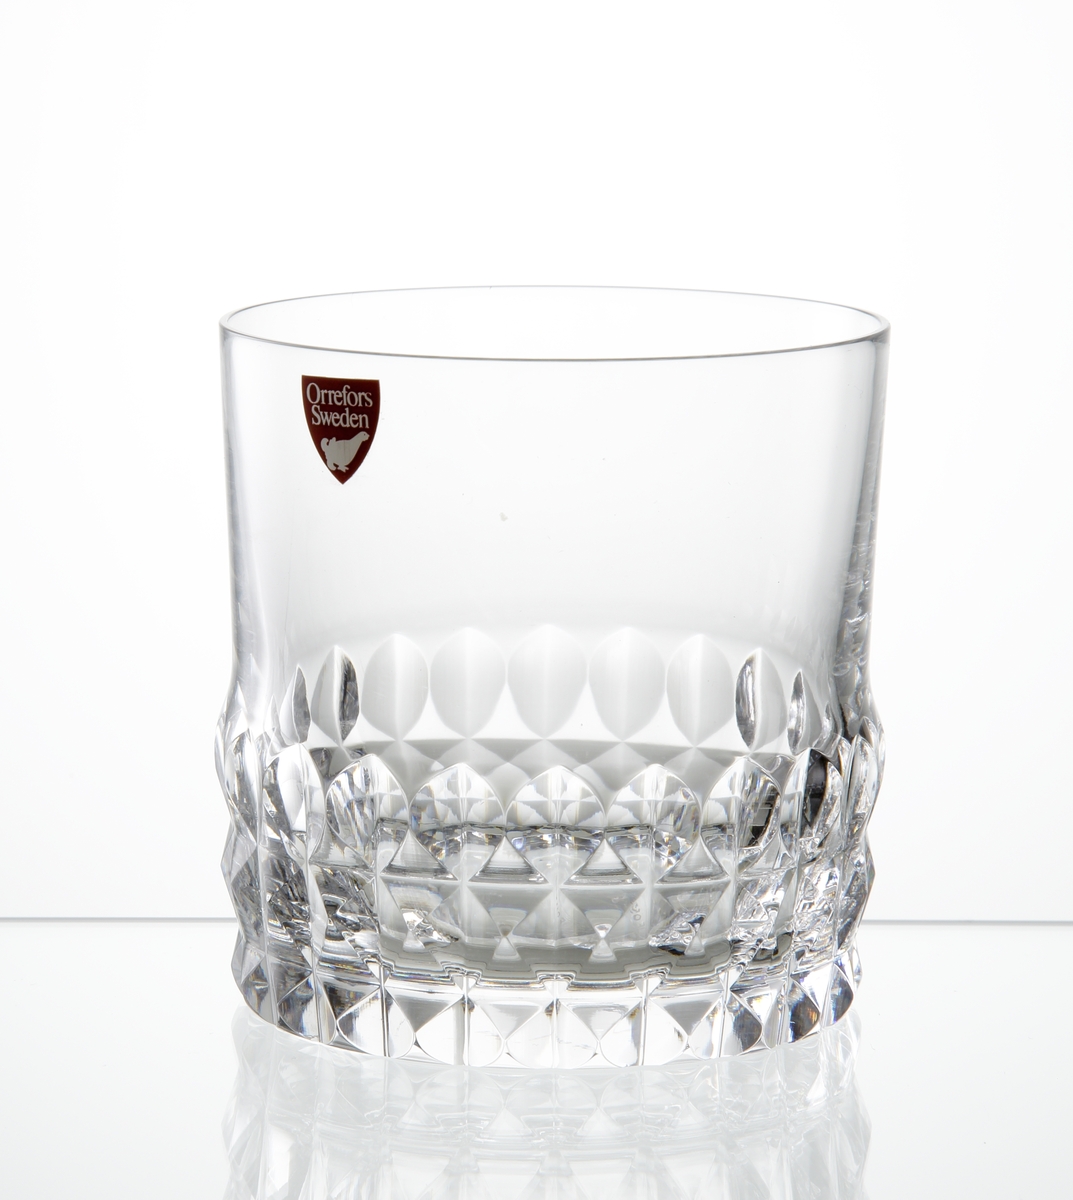 Design: Ingeborg Lundin.
Whiskyglas, cylindrisk kupa med diamantslipad dekor runt kupans nedre del. 
Fabriksmärke: Röd botten med vit text.